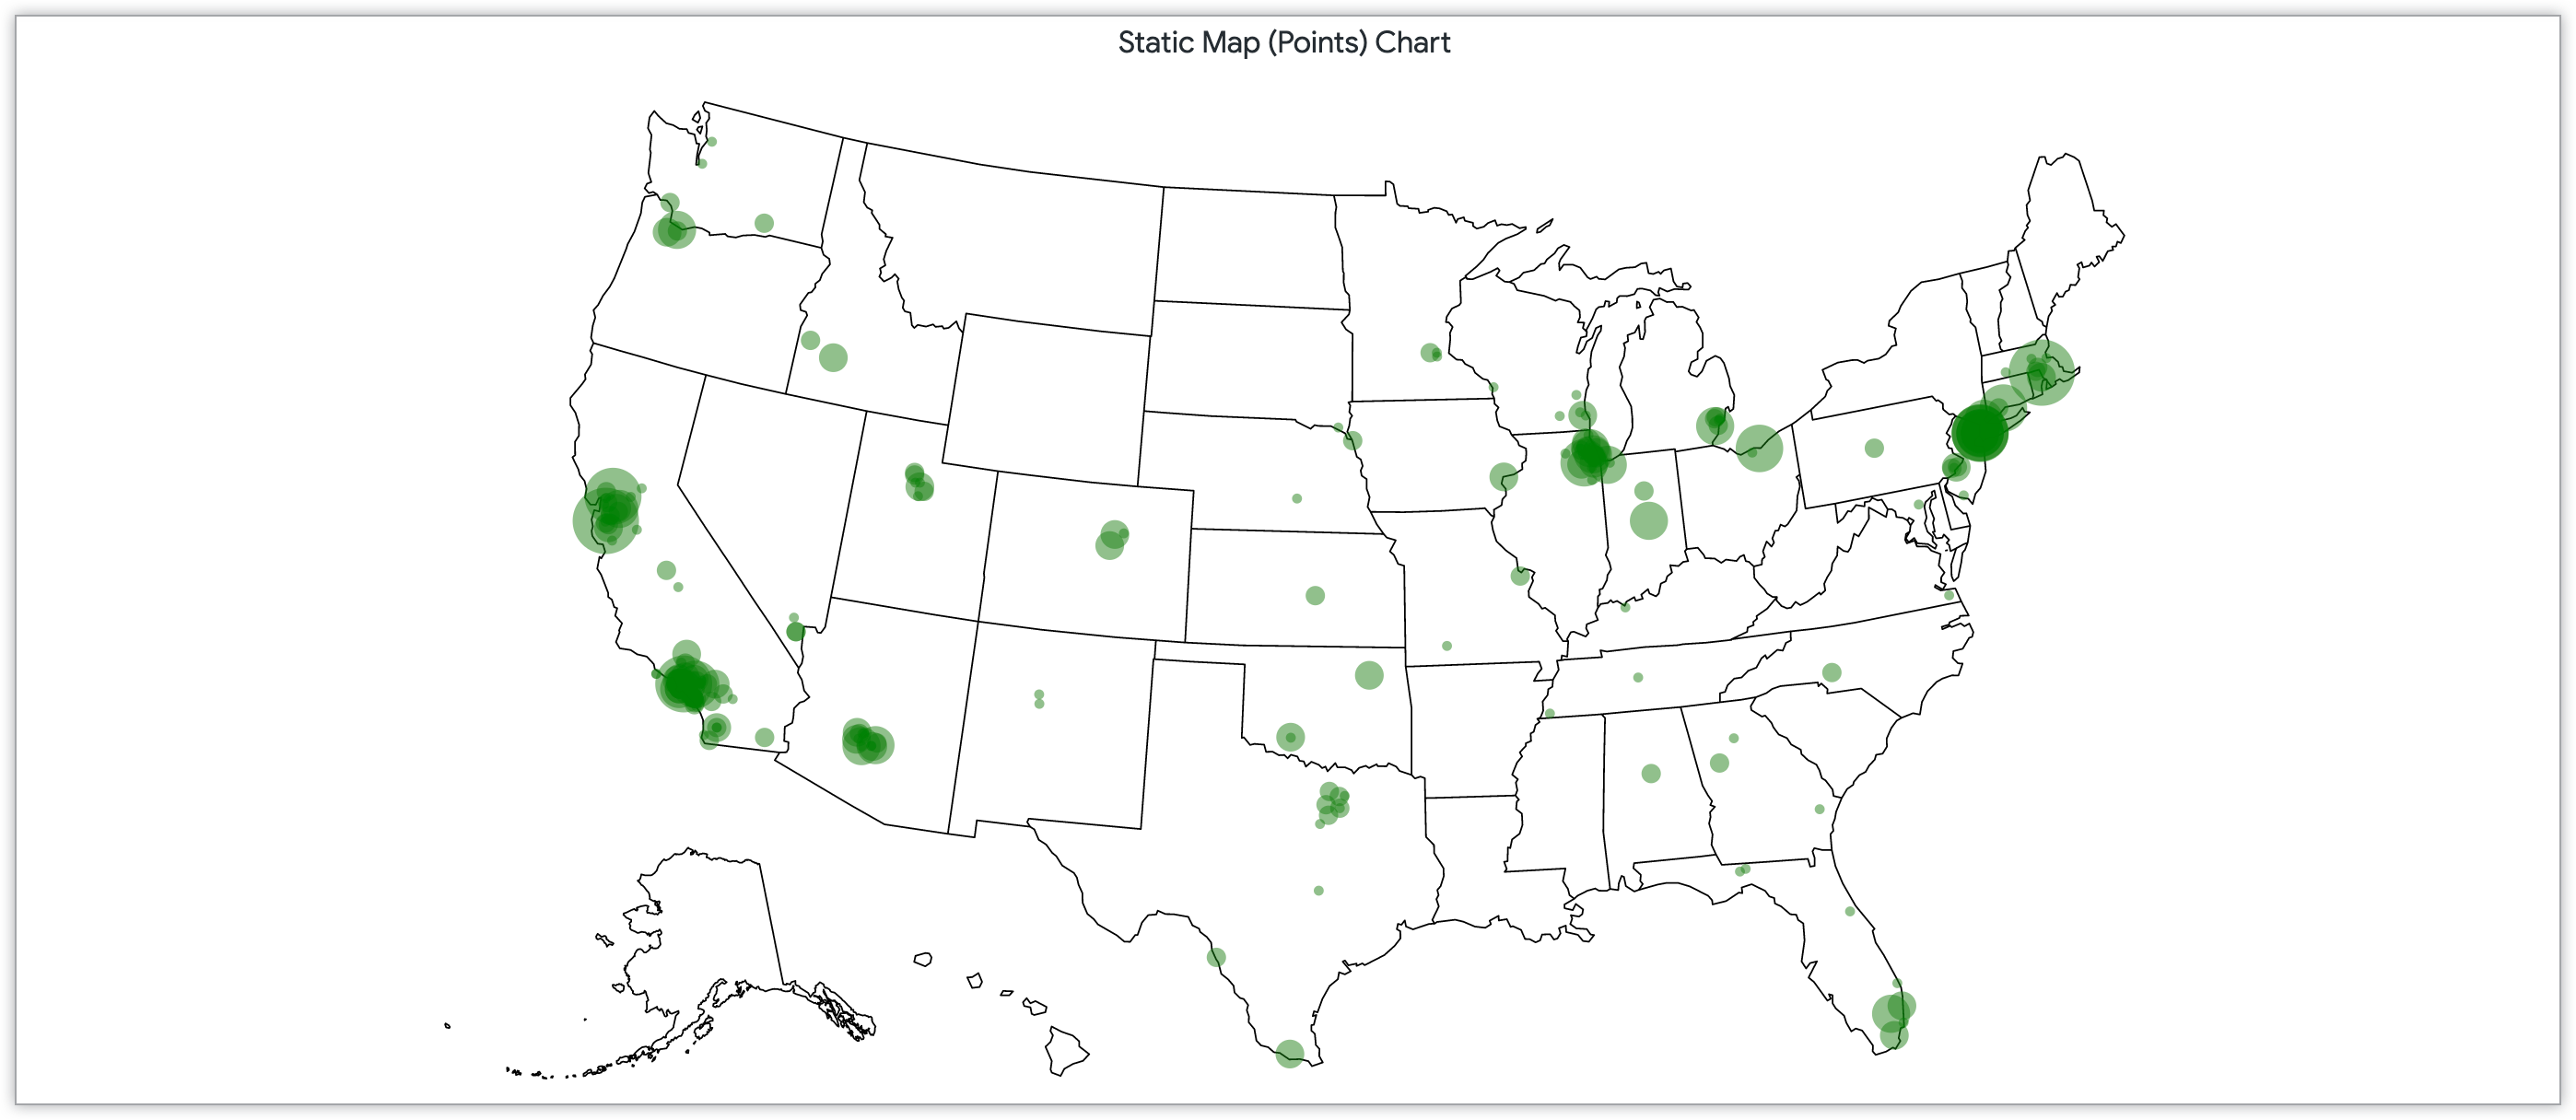 静态地图图表，其中的点按美国各地邮政编码的客户数量确定。